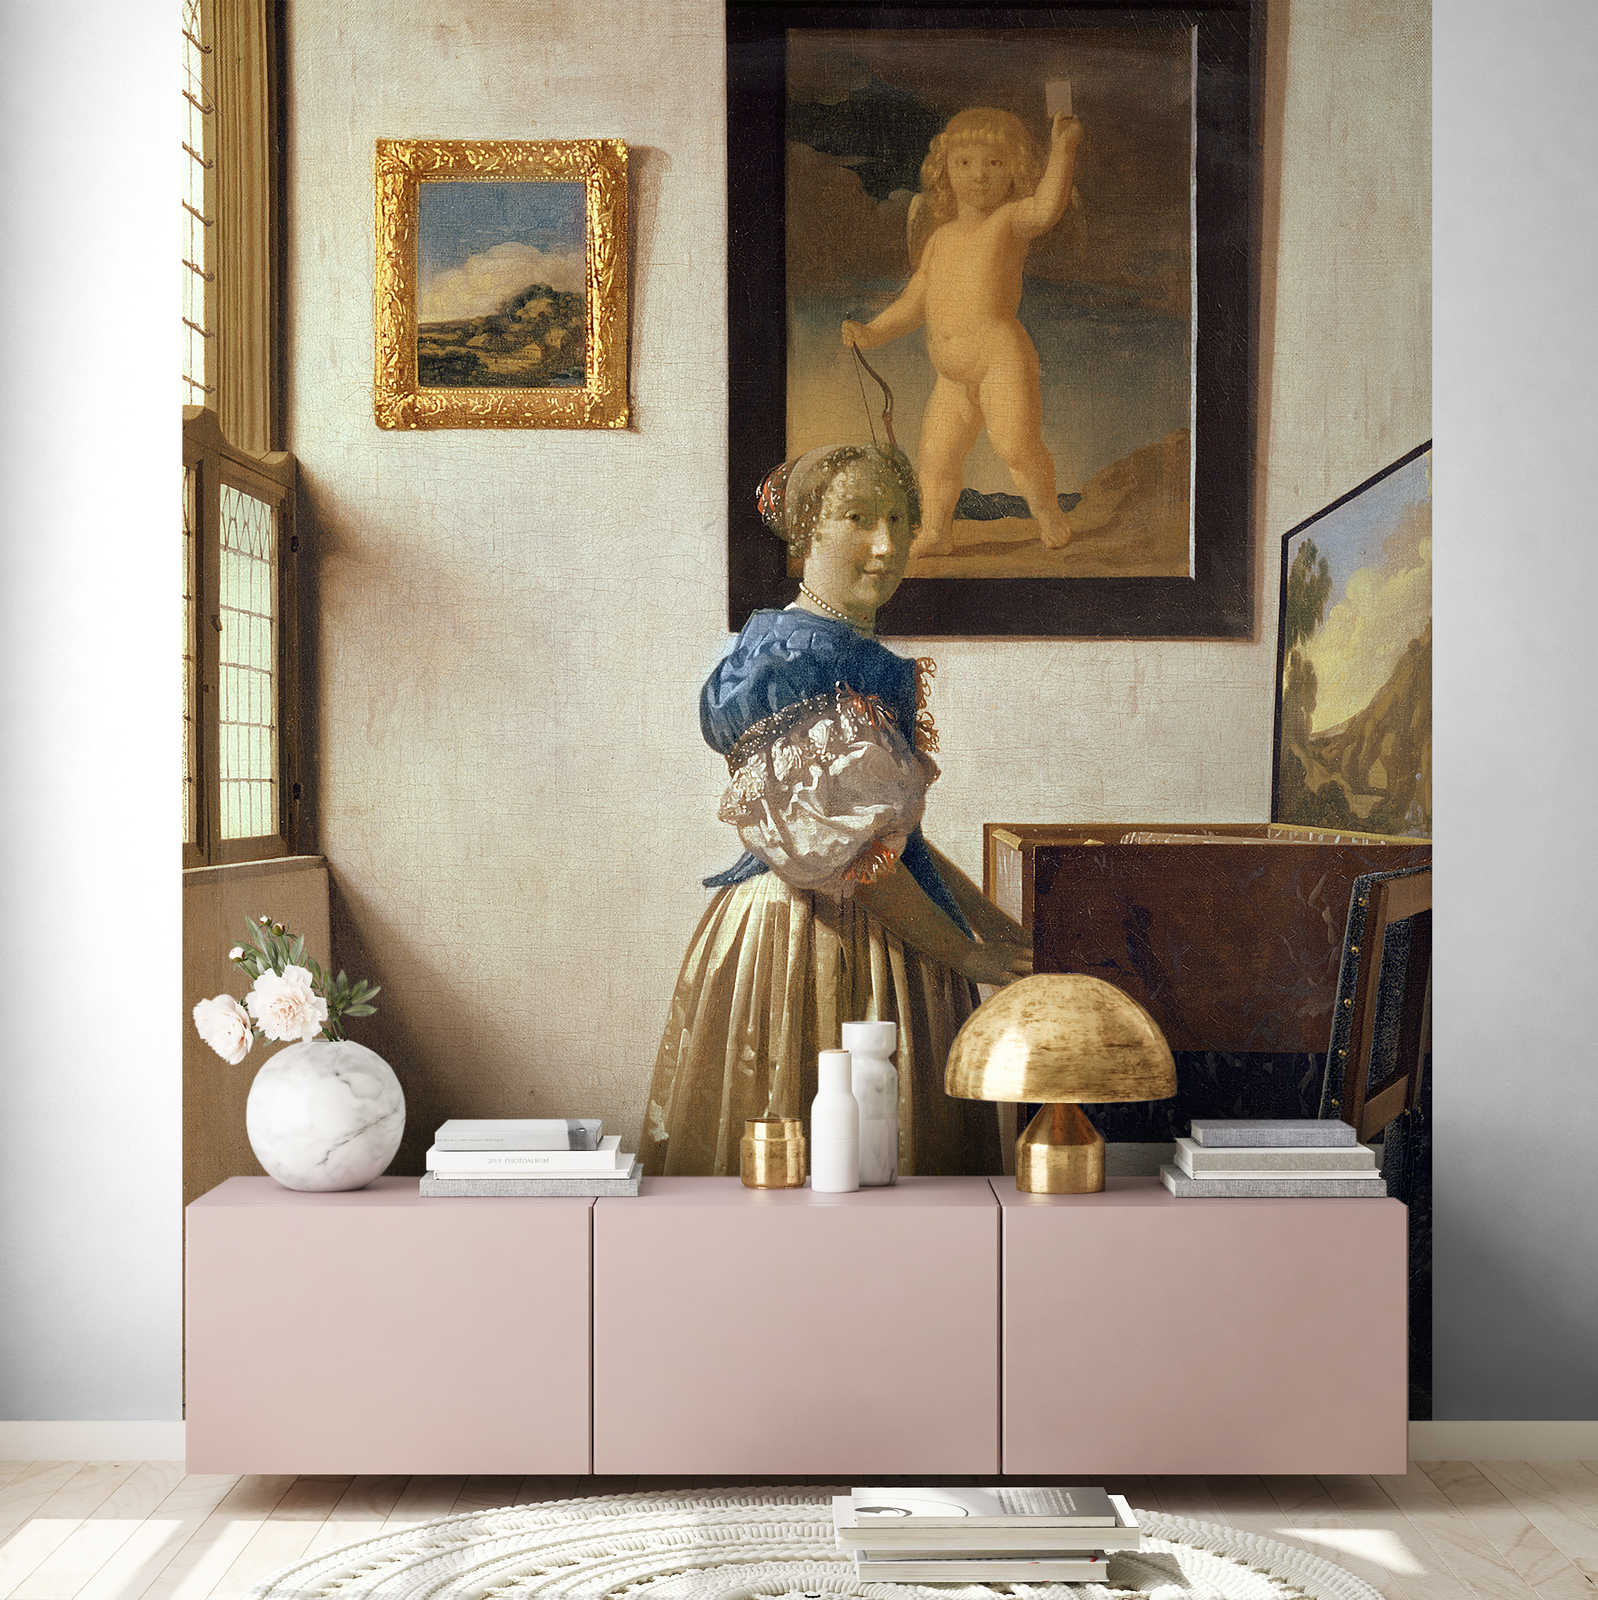             Fotobehang "Een jonge vrouw bij een meisje" van Jan Vermeer
        